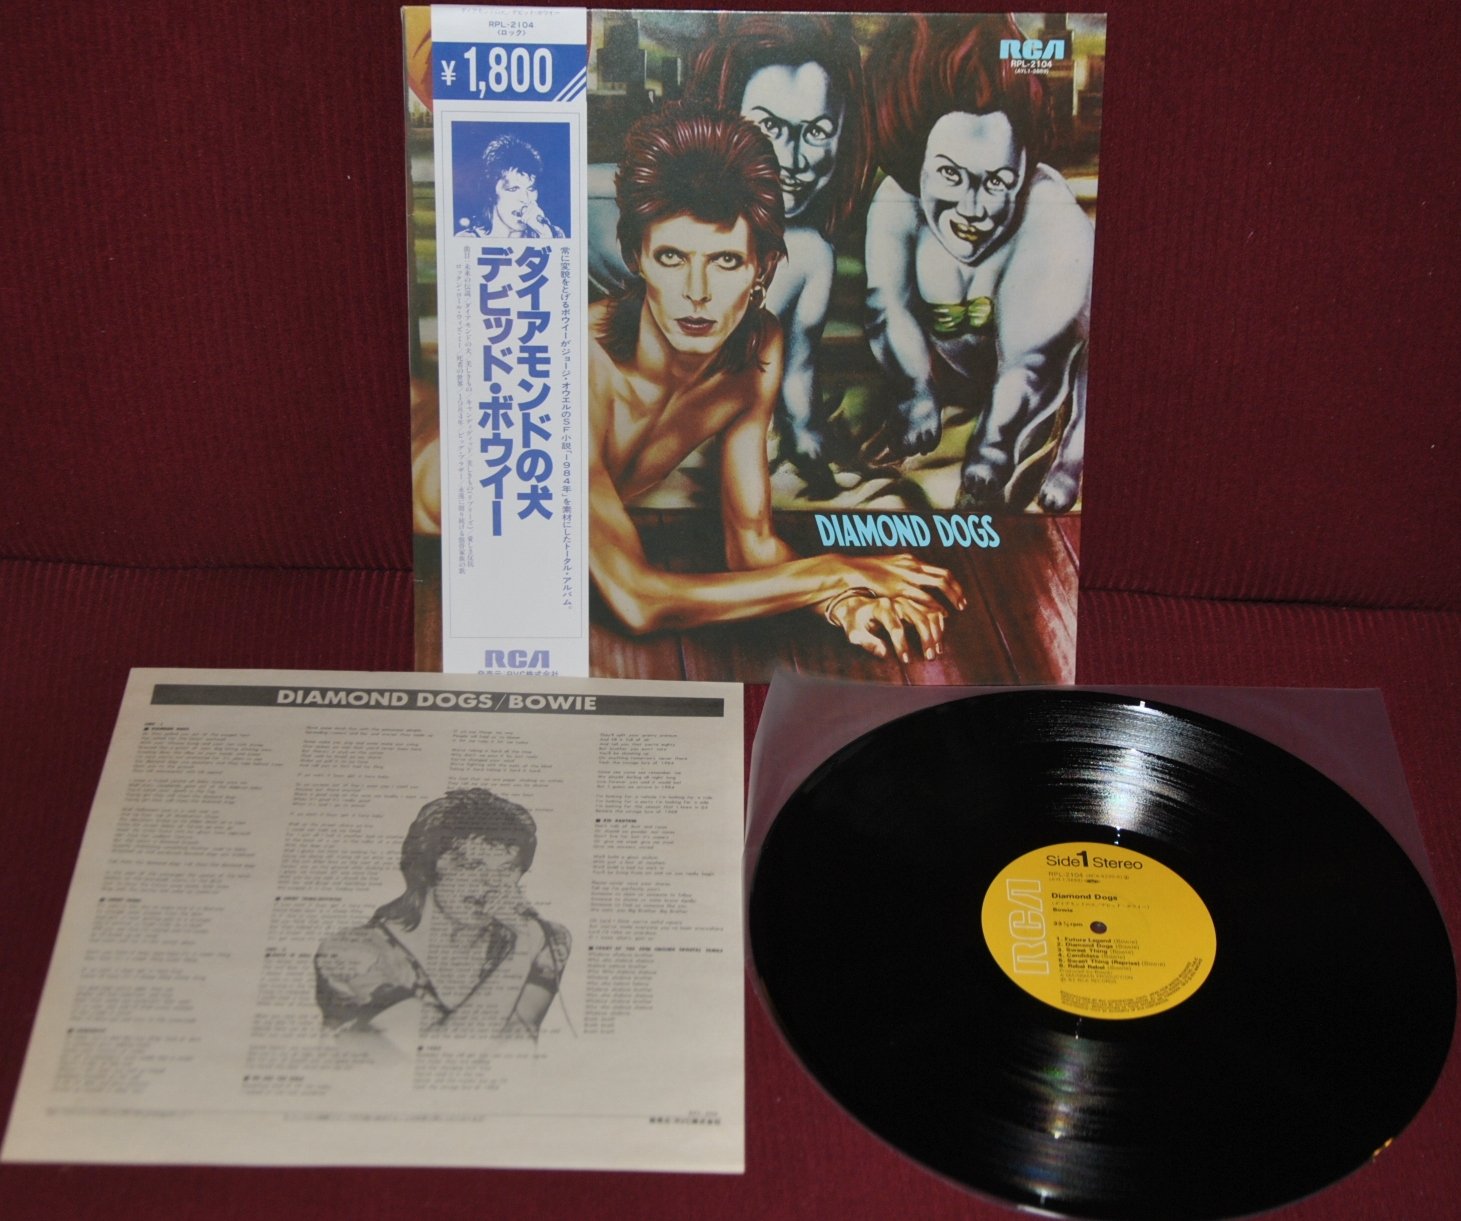 DAVID BOWIE – DIAMOND DOGS – RCA RPL 2104 1982 – JAPAN OBI LP NM

LP EDIZIONE GI…